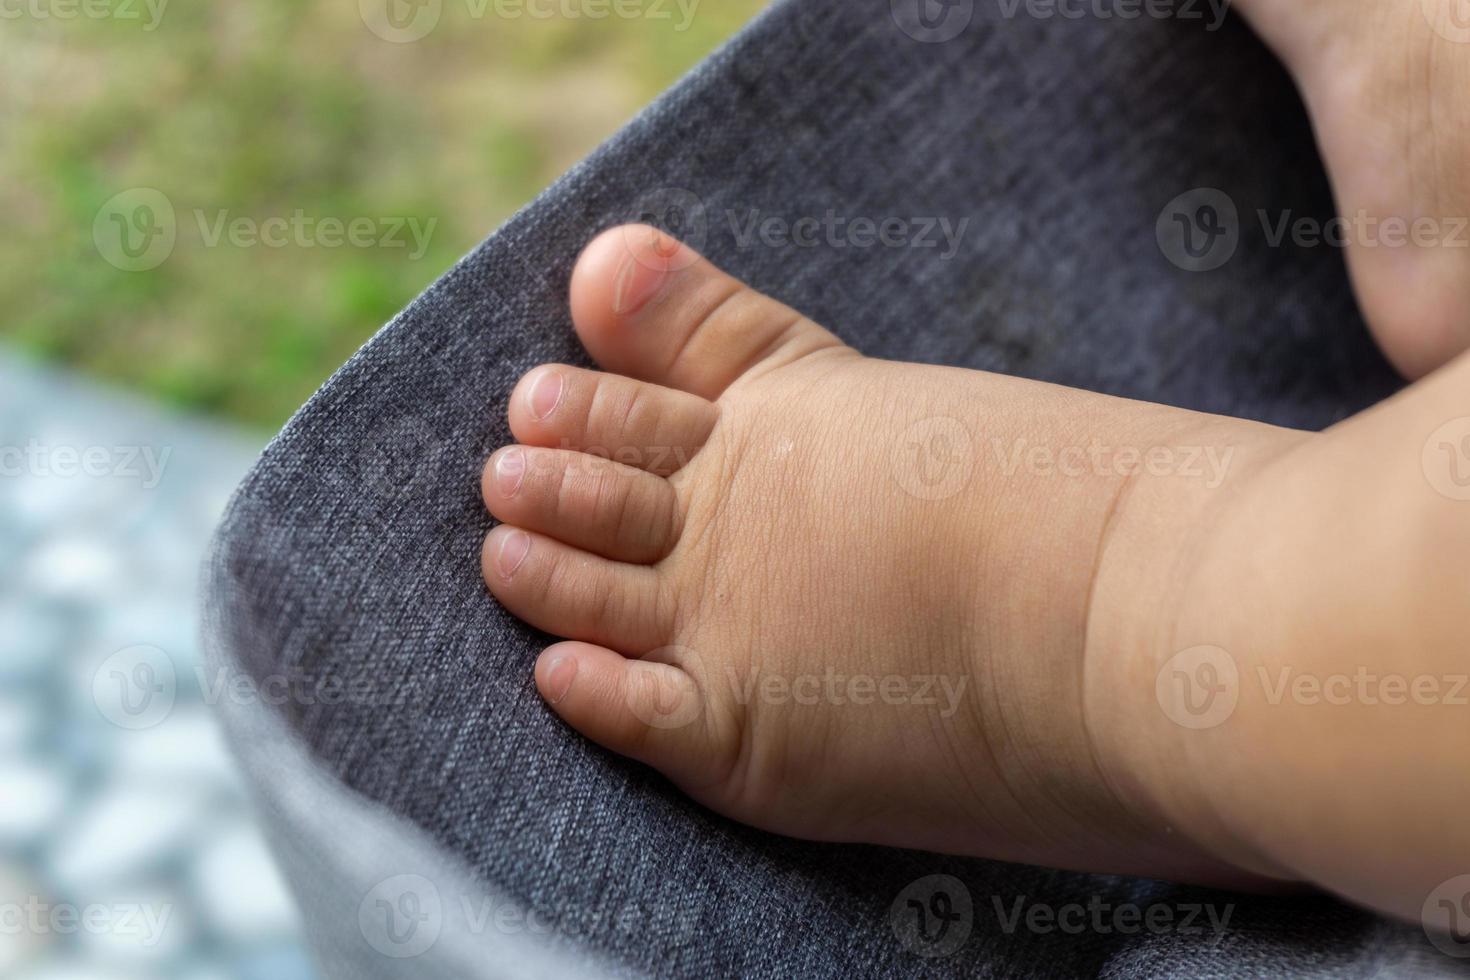 proche en haut de bébé minuscule pieds. bébé pied sur poussette. bébé garçon minuscule pieds. photo